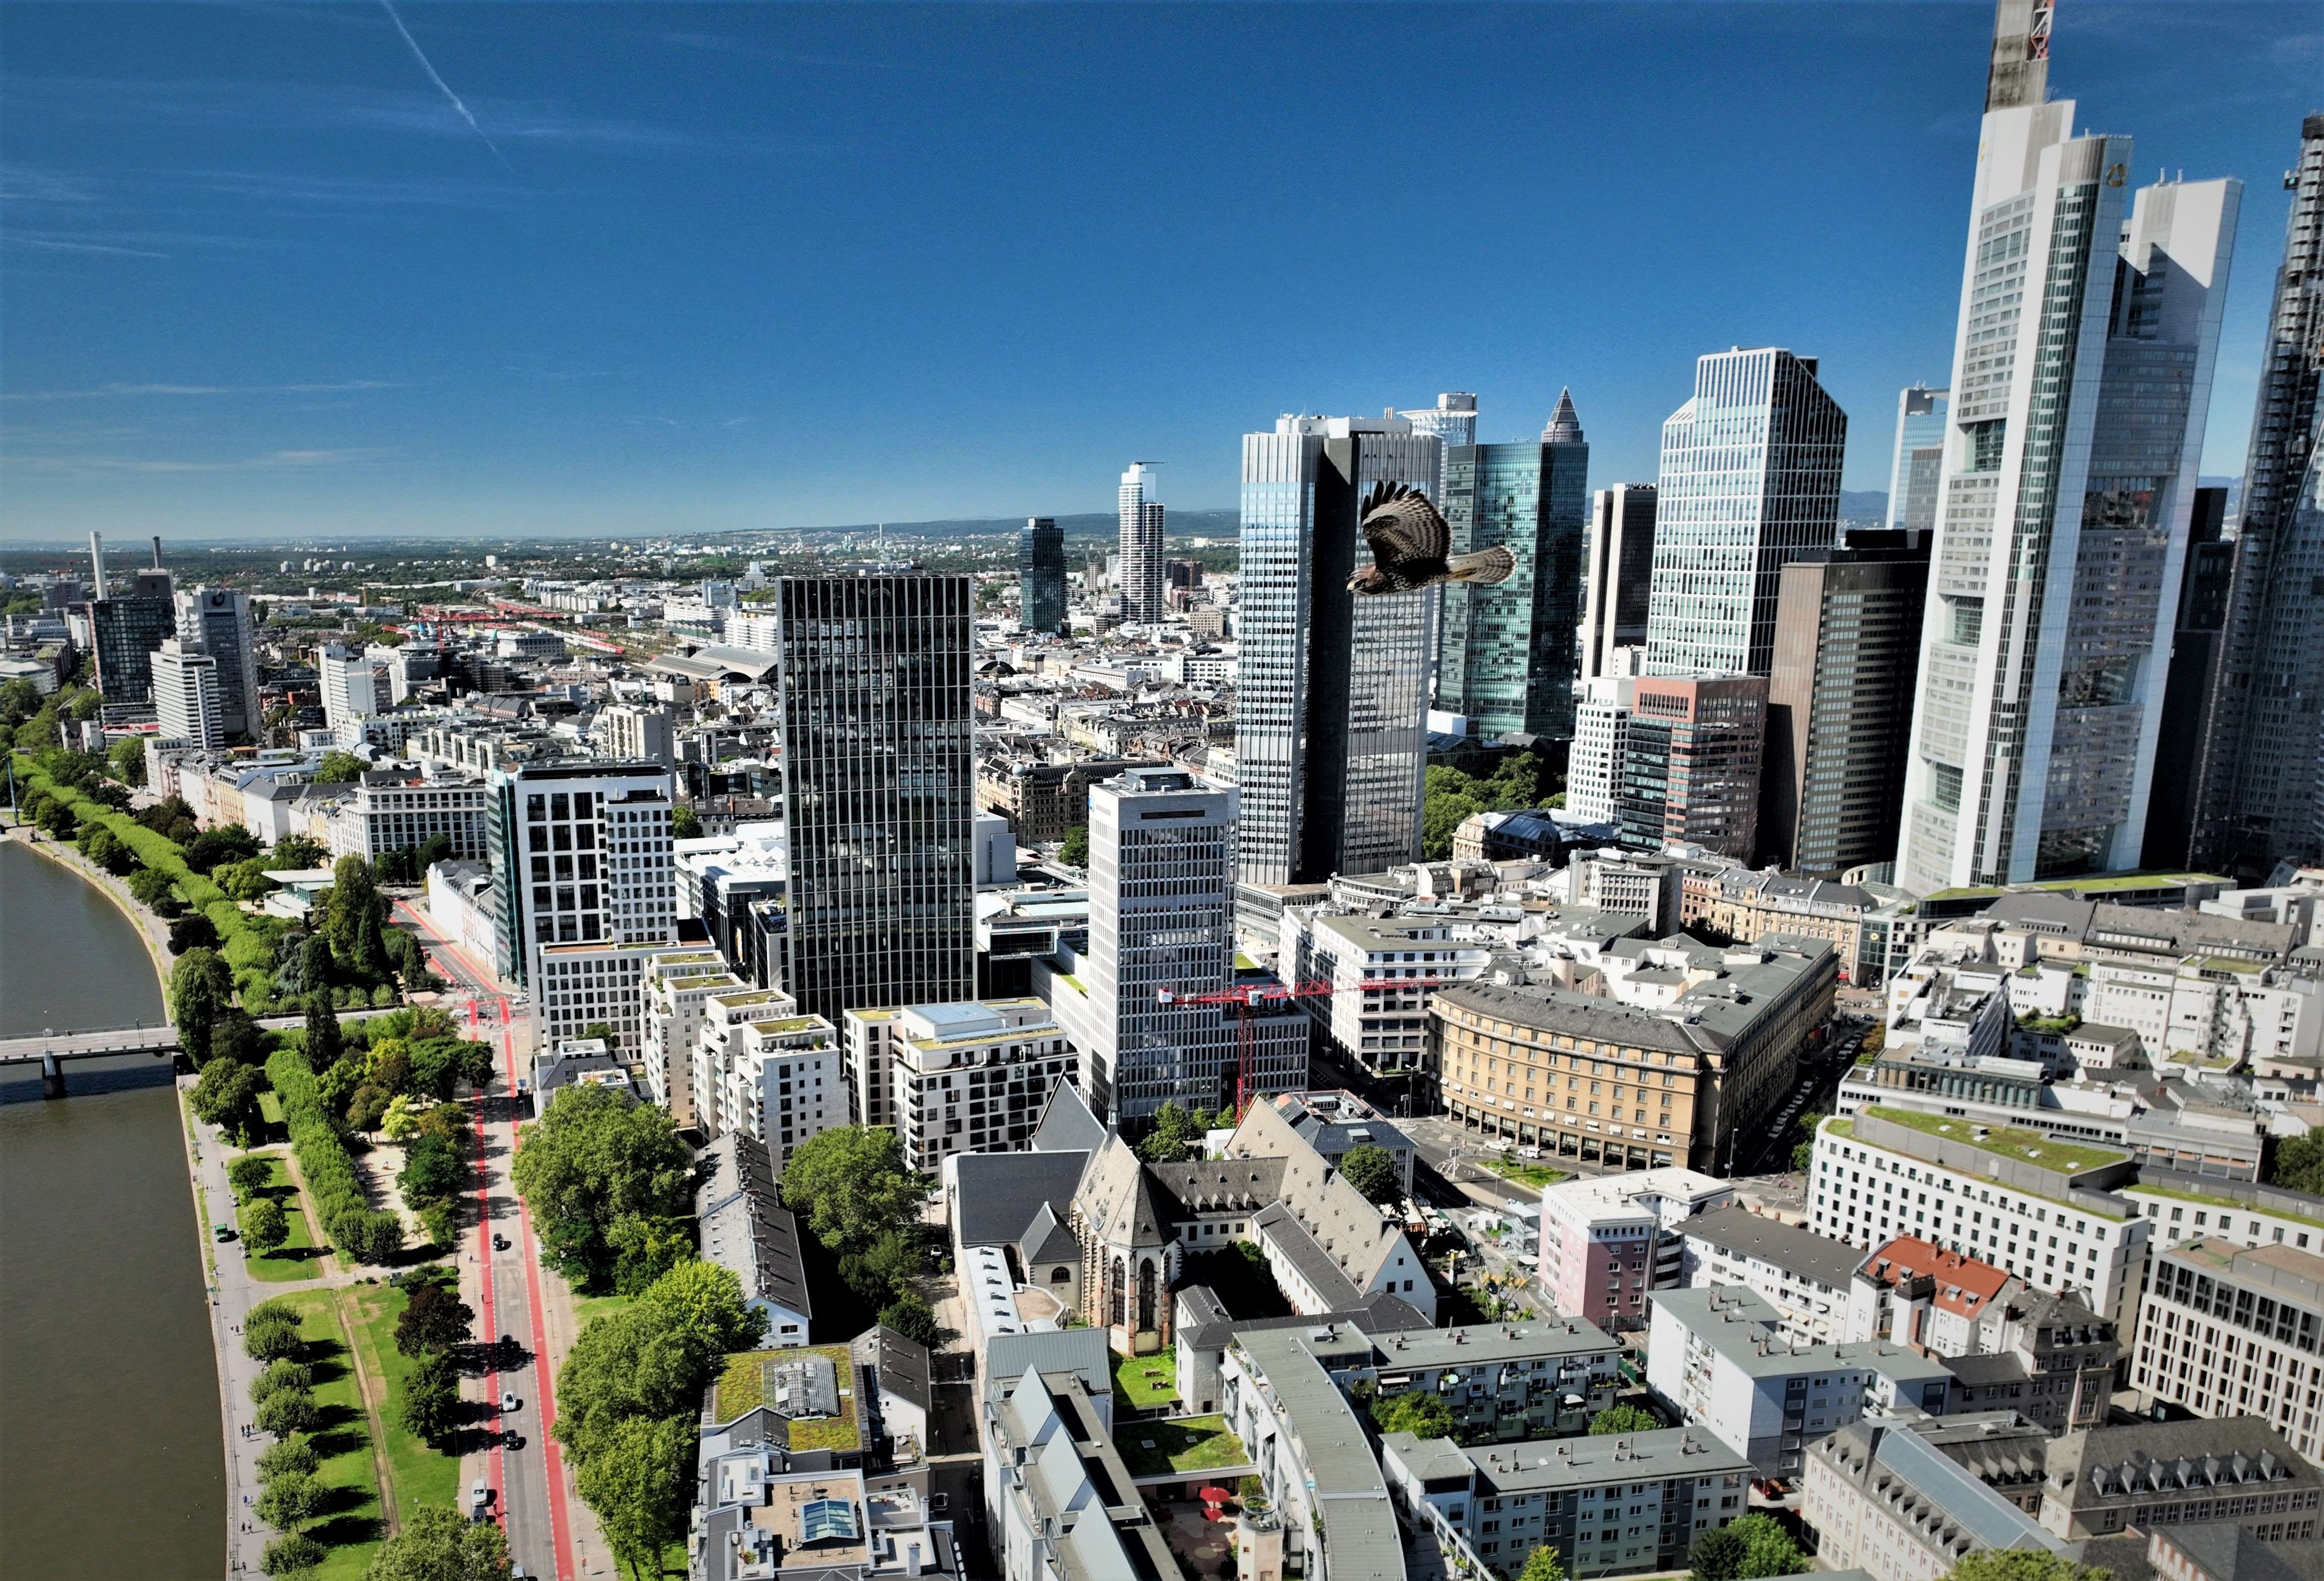 Luftbild Inspektion Adler Bussard Frankfurt am Main Skyline  Preis Bauvisualisierung Kosten Drohnendienstleistung